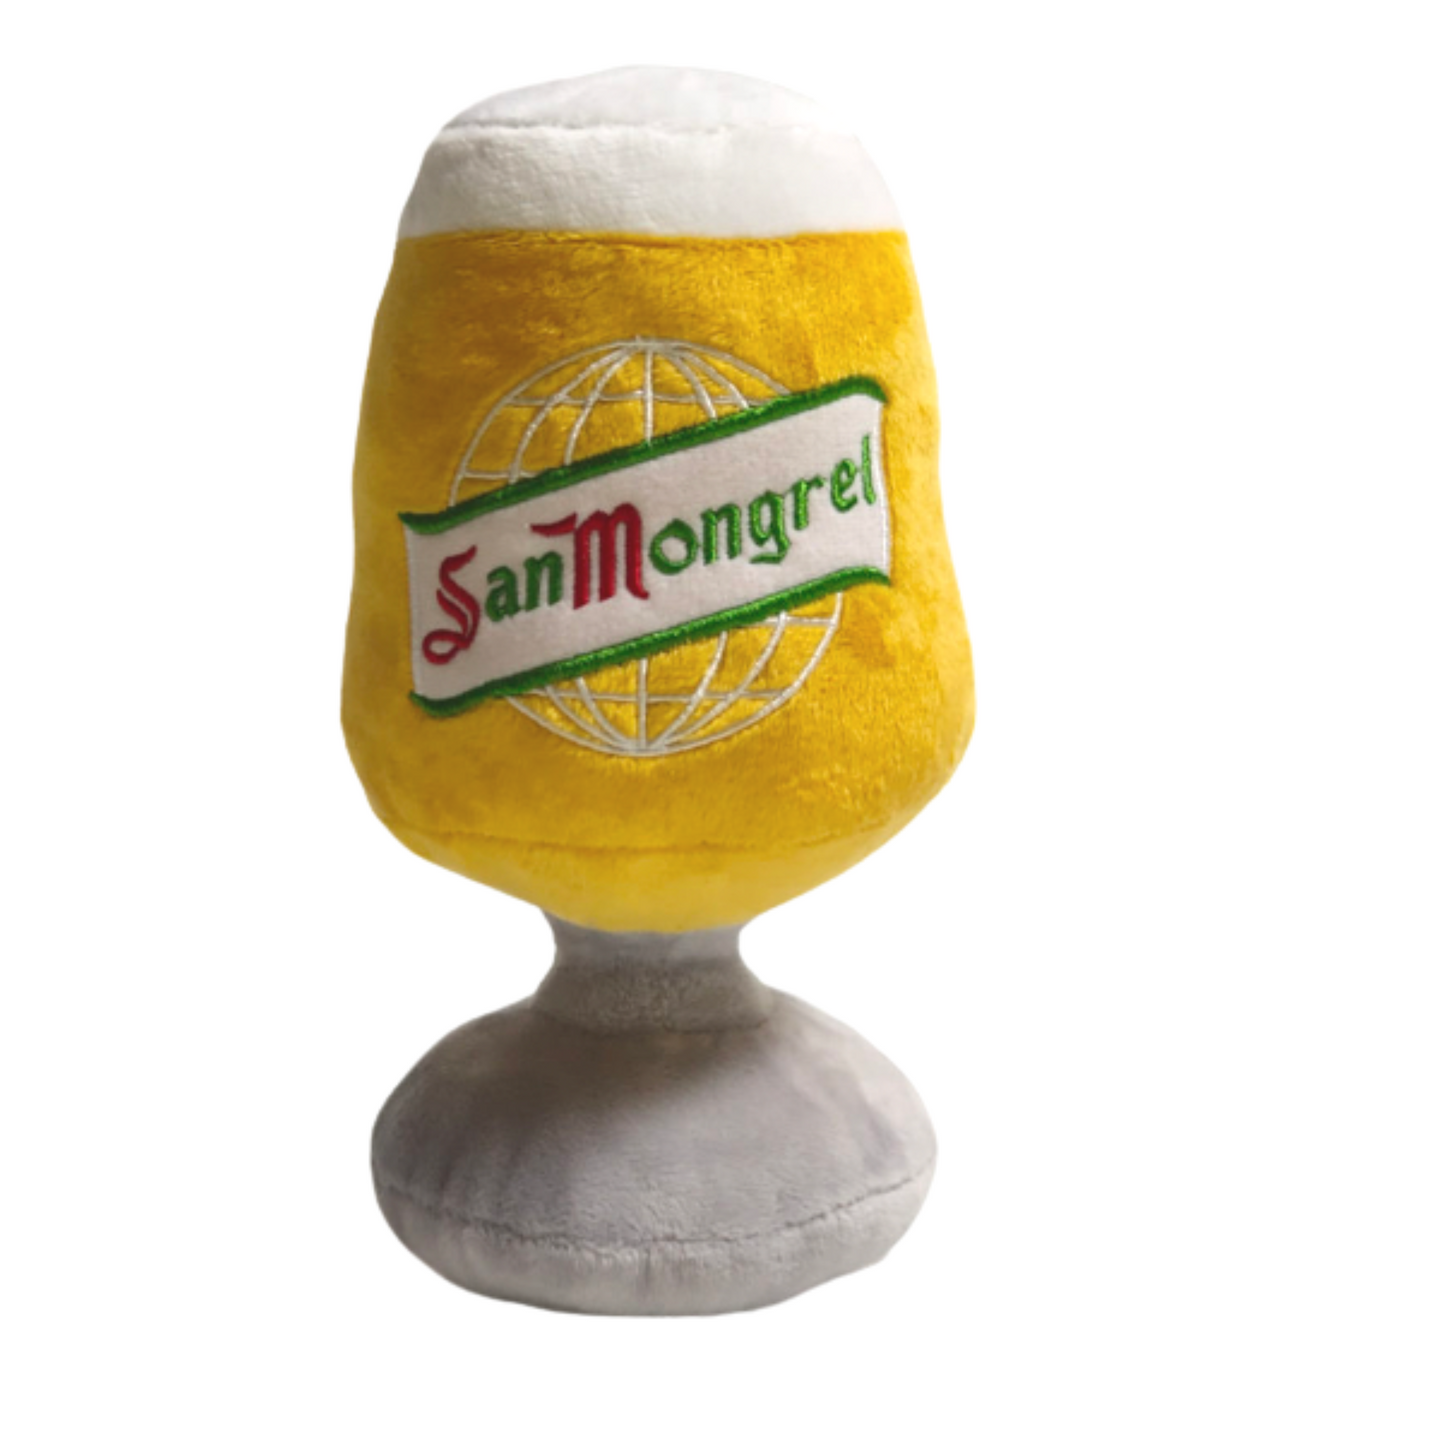 CatwalkDog San Mongrel Beer Glass Plush Dog Toy